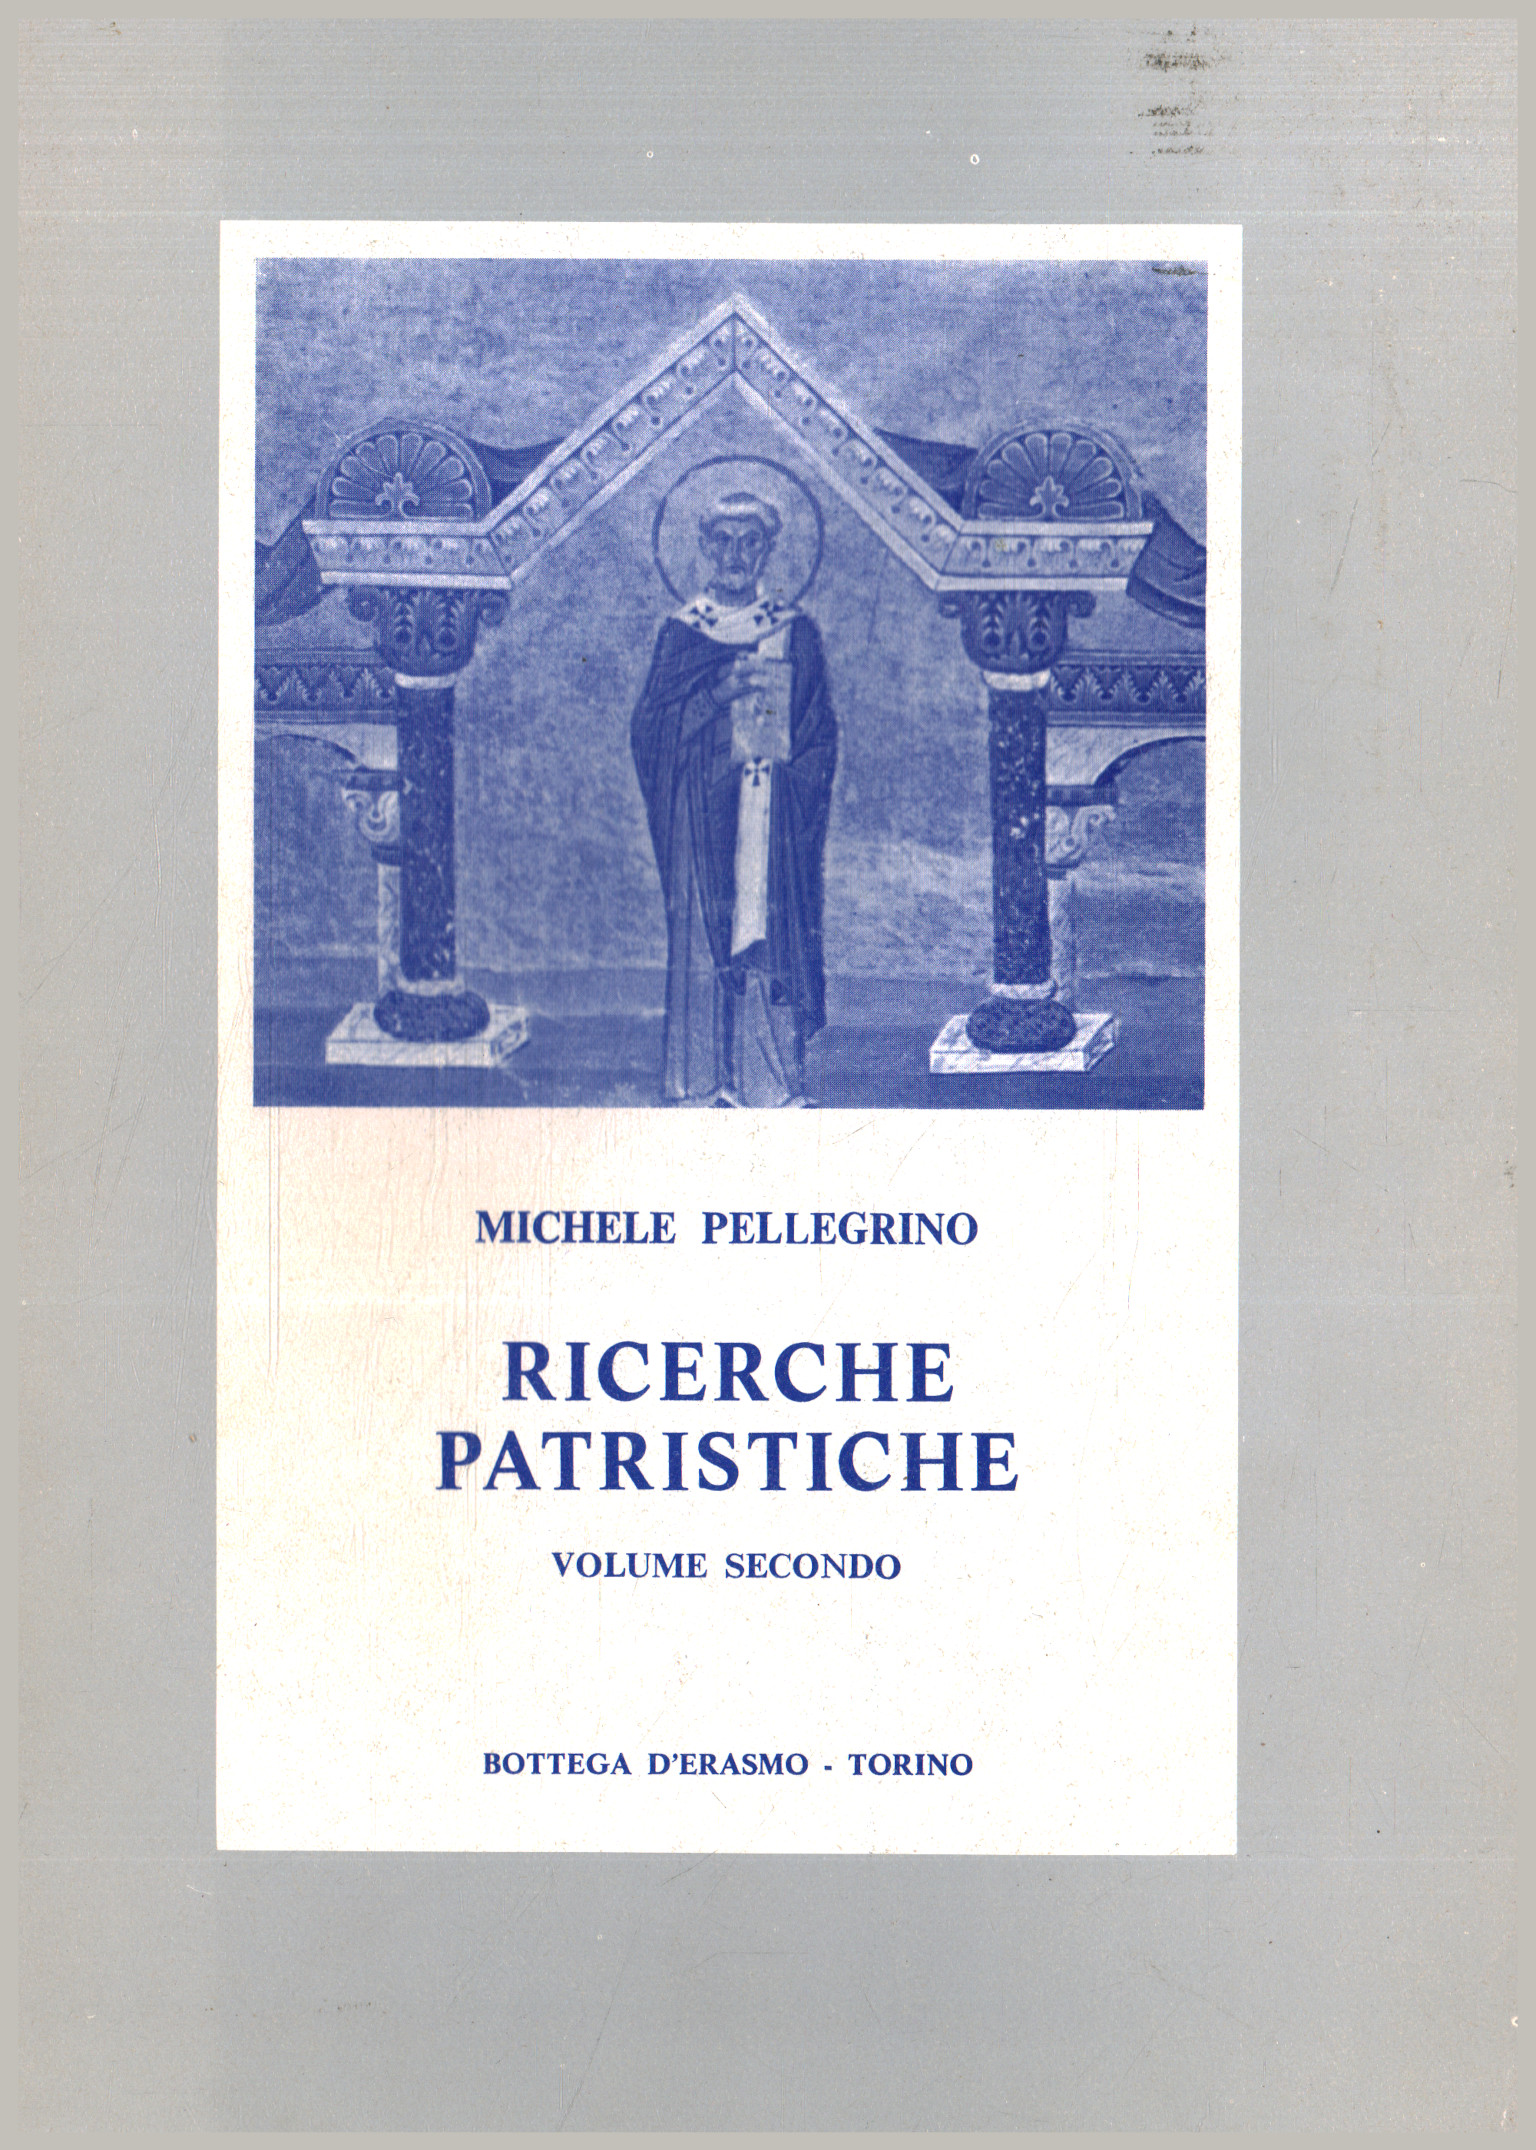 Ricerche patristiche 1938-1980 (Volume II)